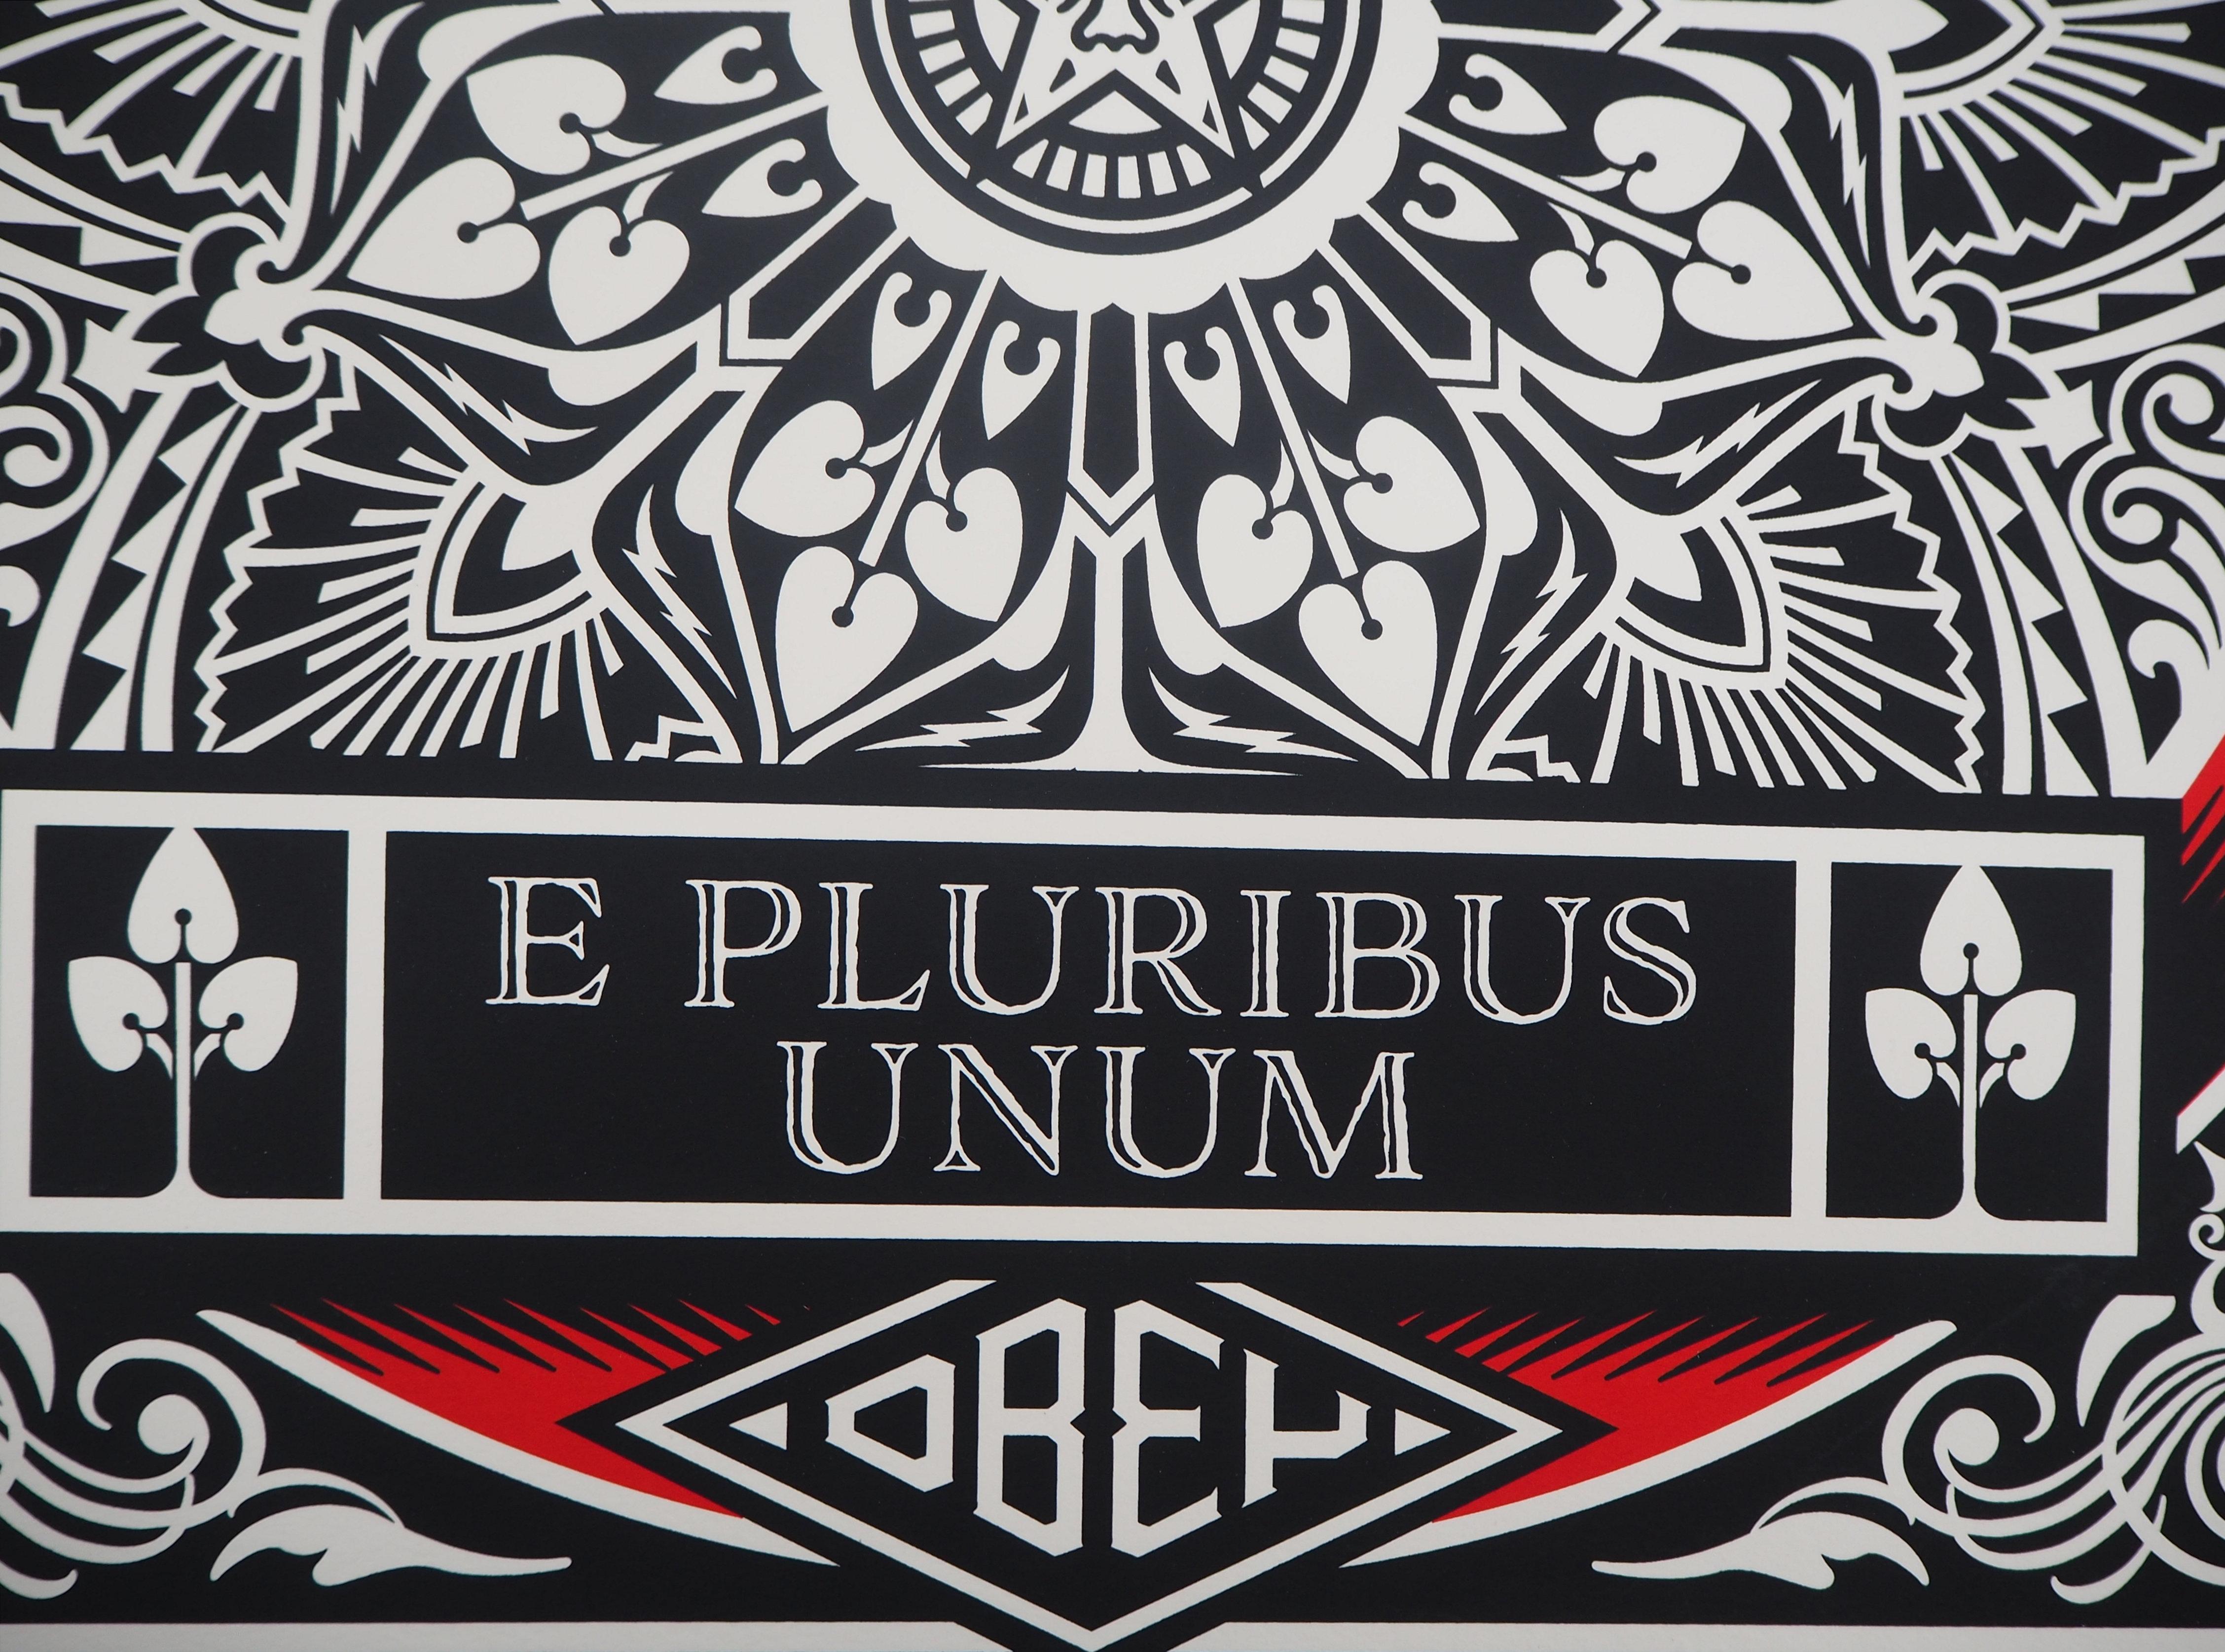 ex pluribus unum ring